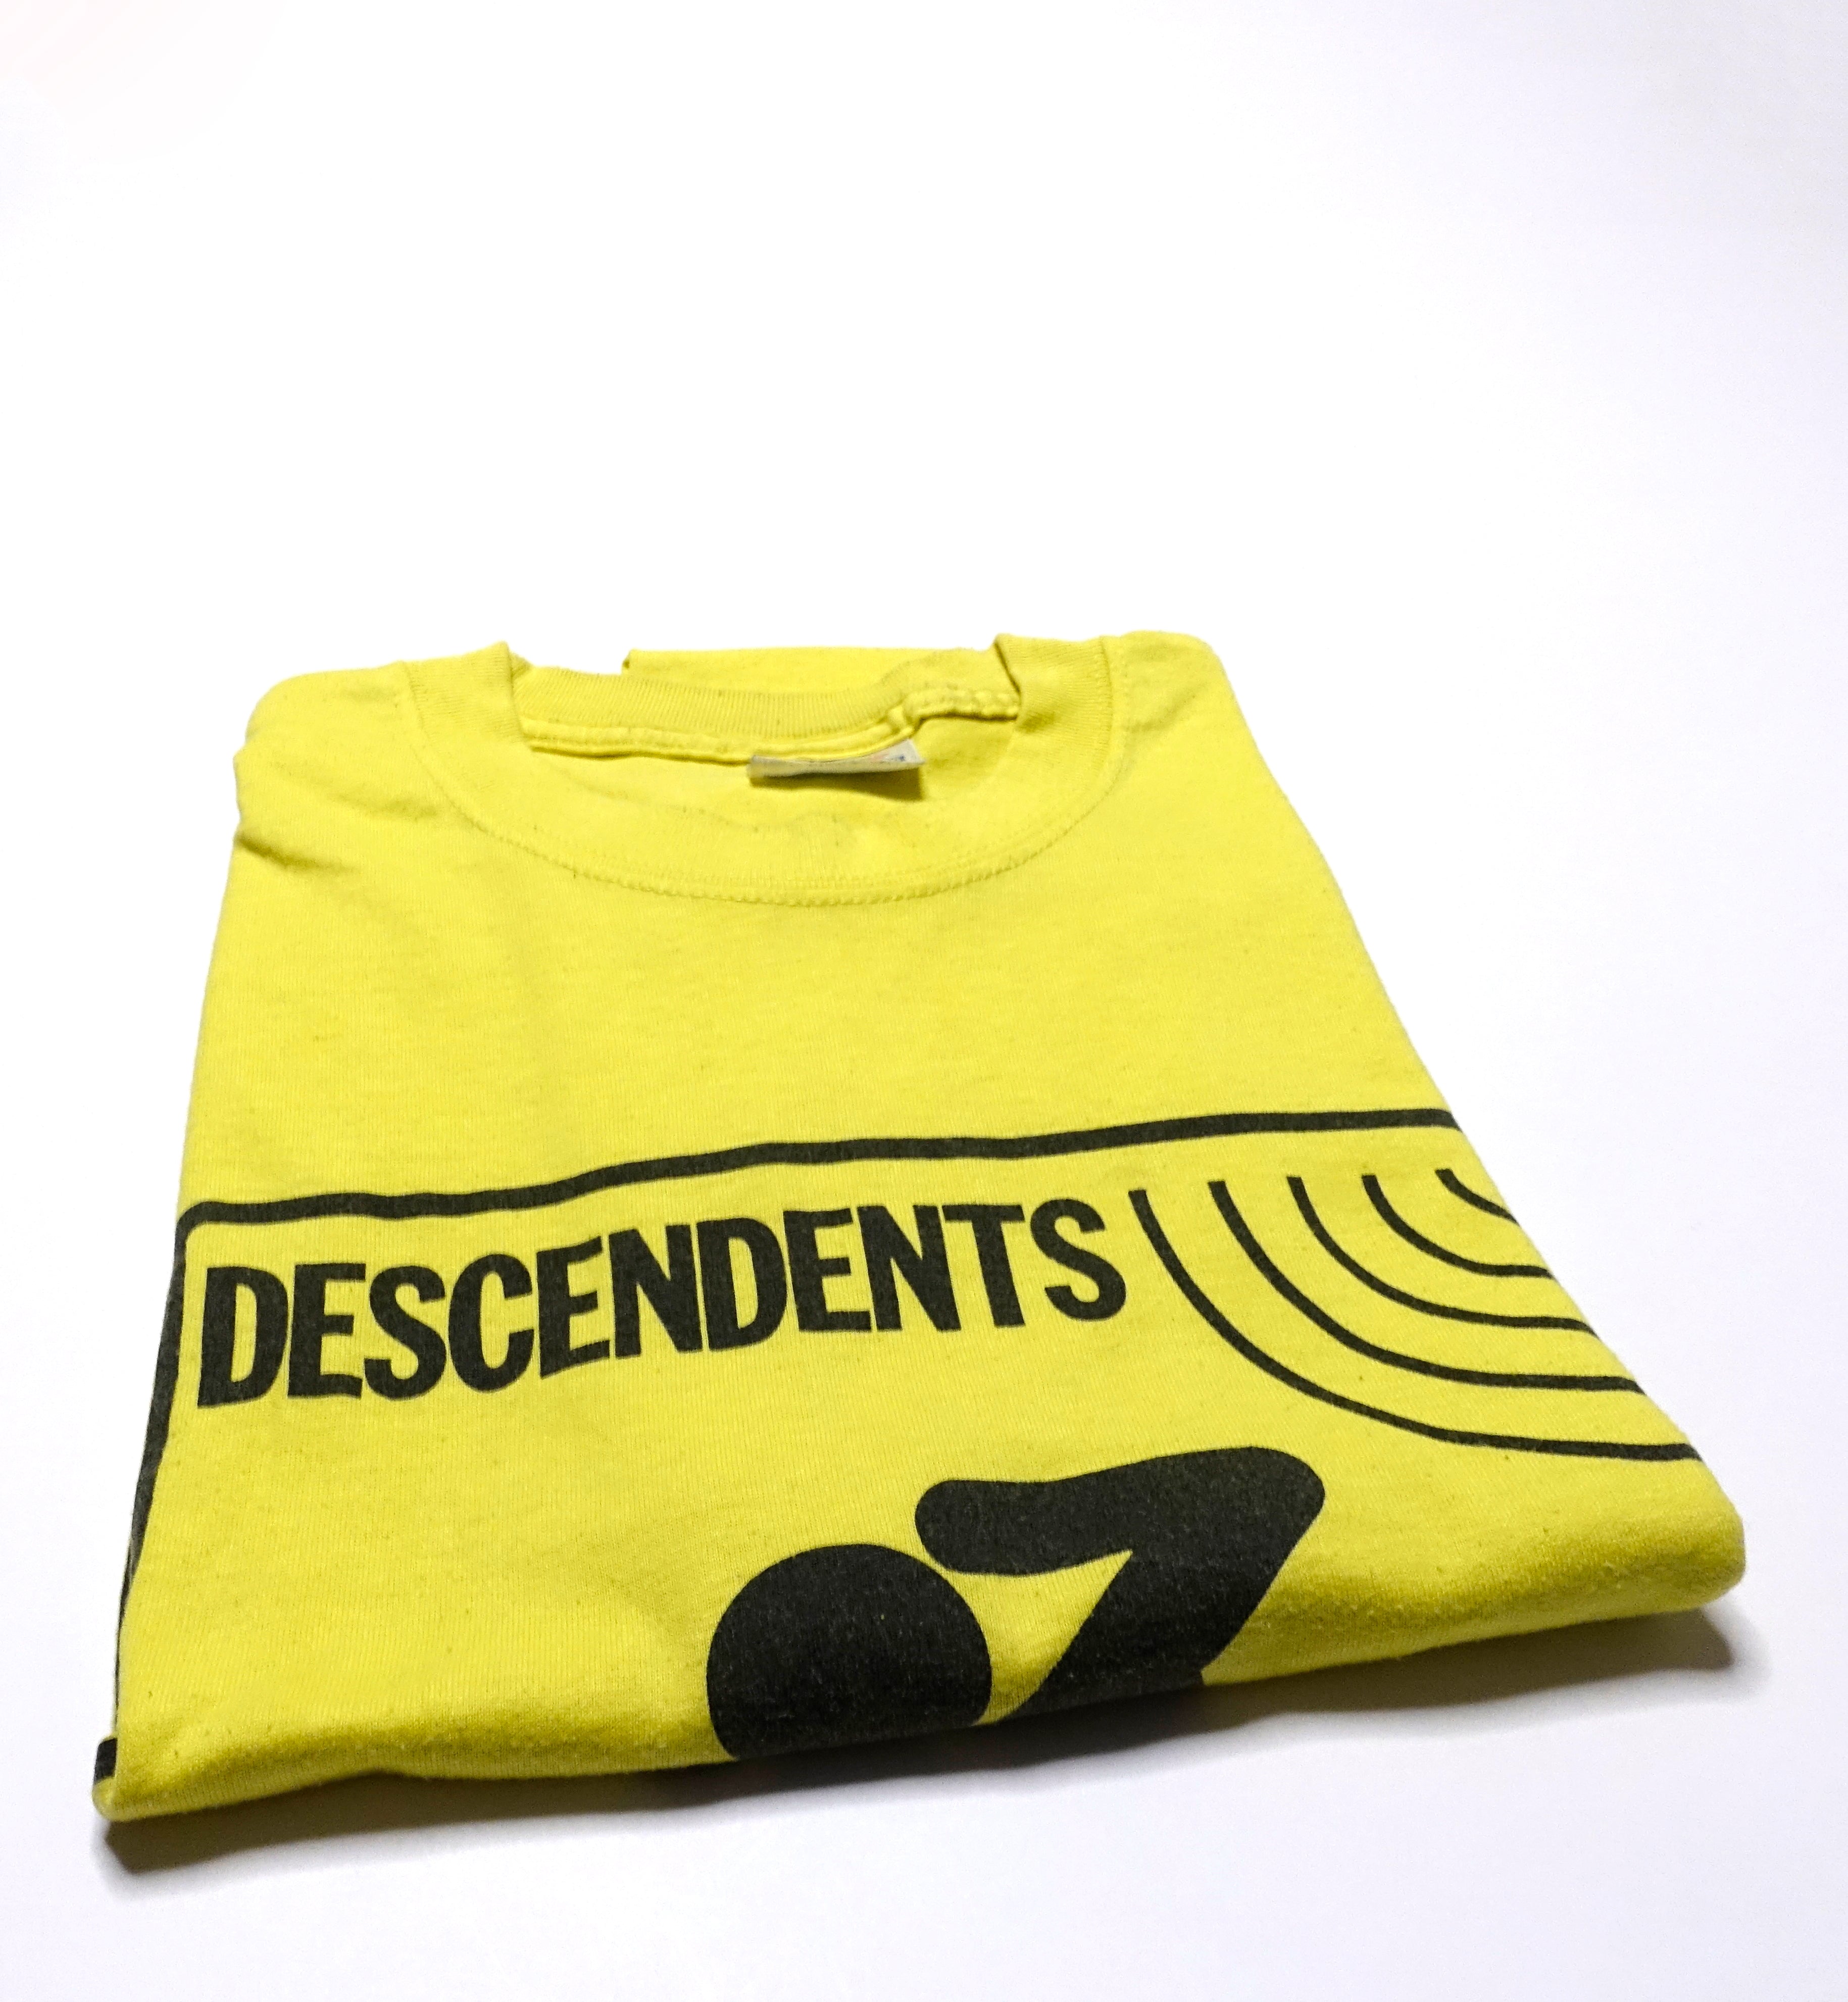 Descendents - 90's Hallraker Live Shirt Size Large